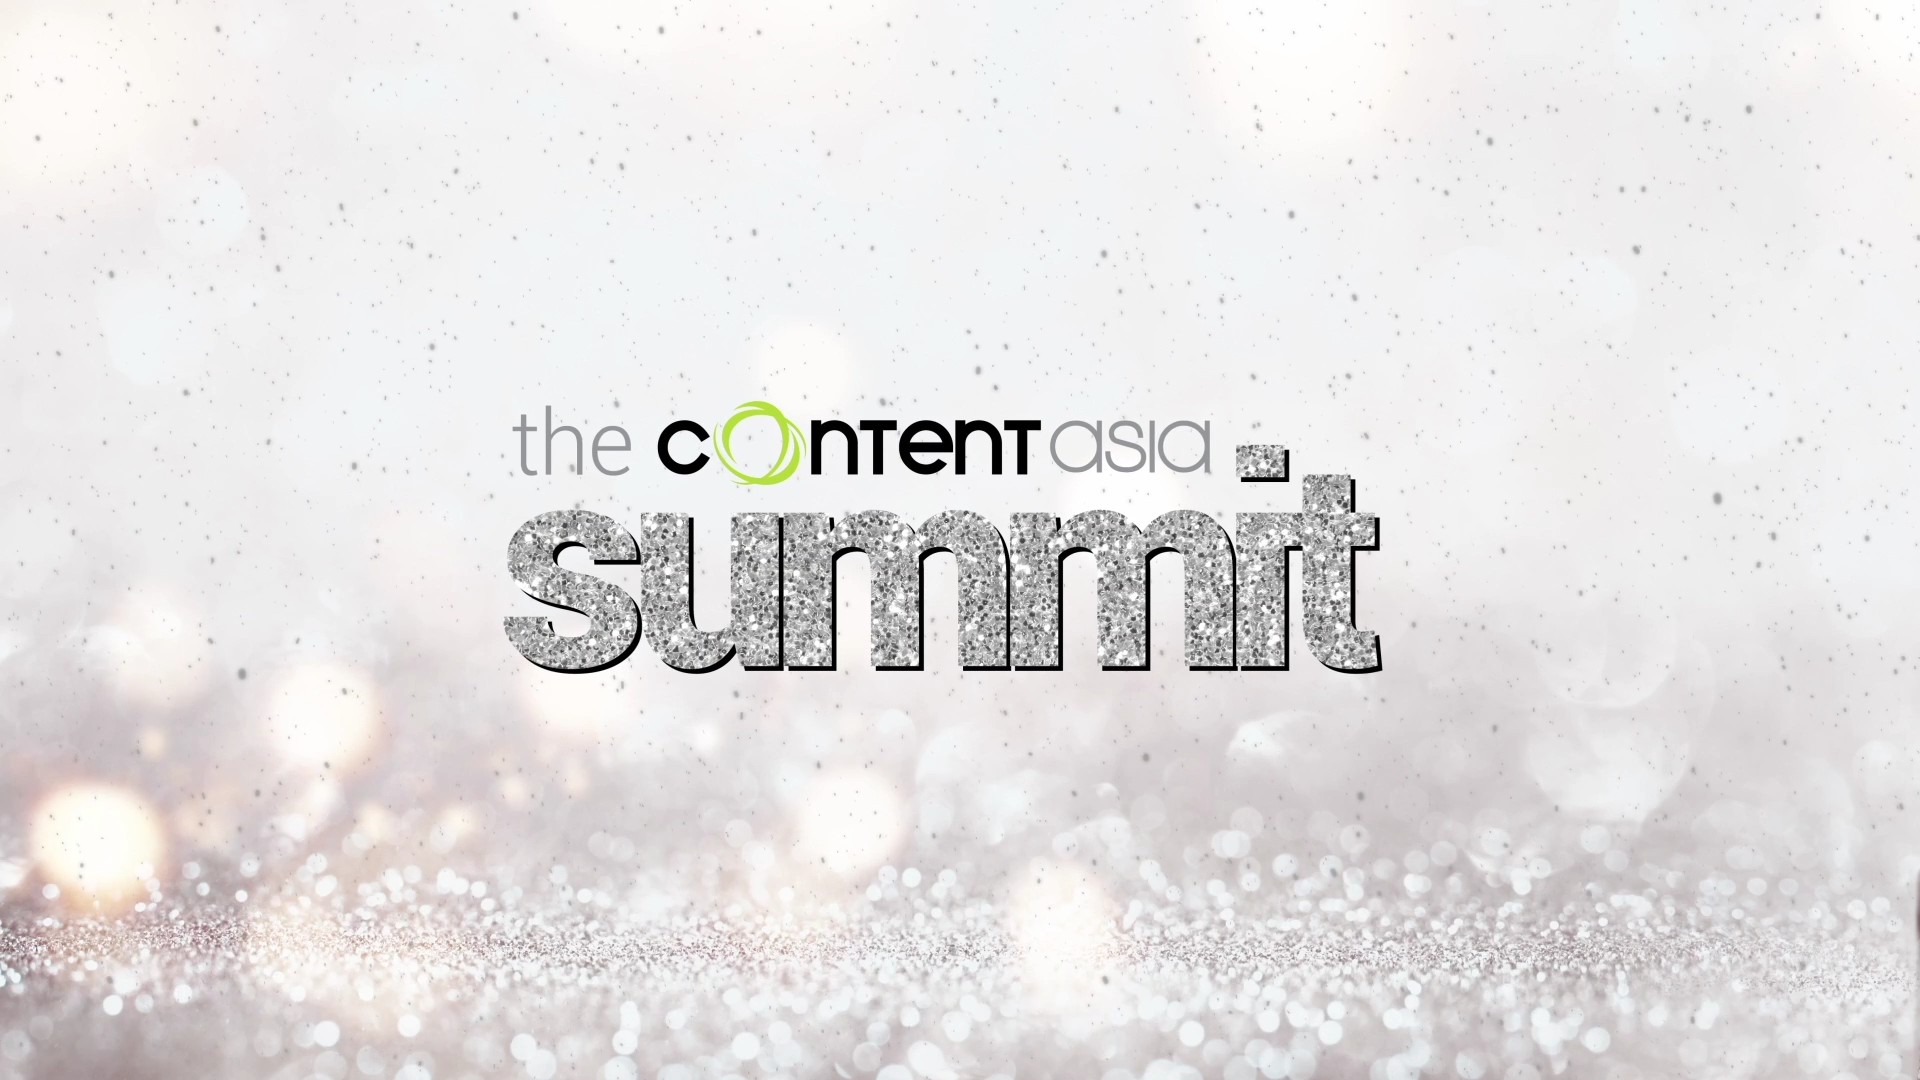 contentasia summit 2018 motion graphic